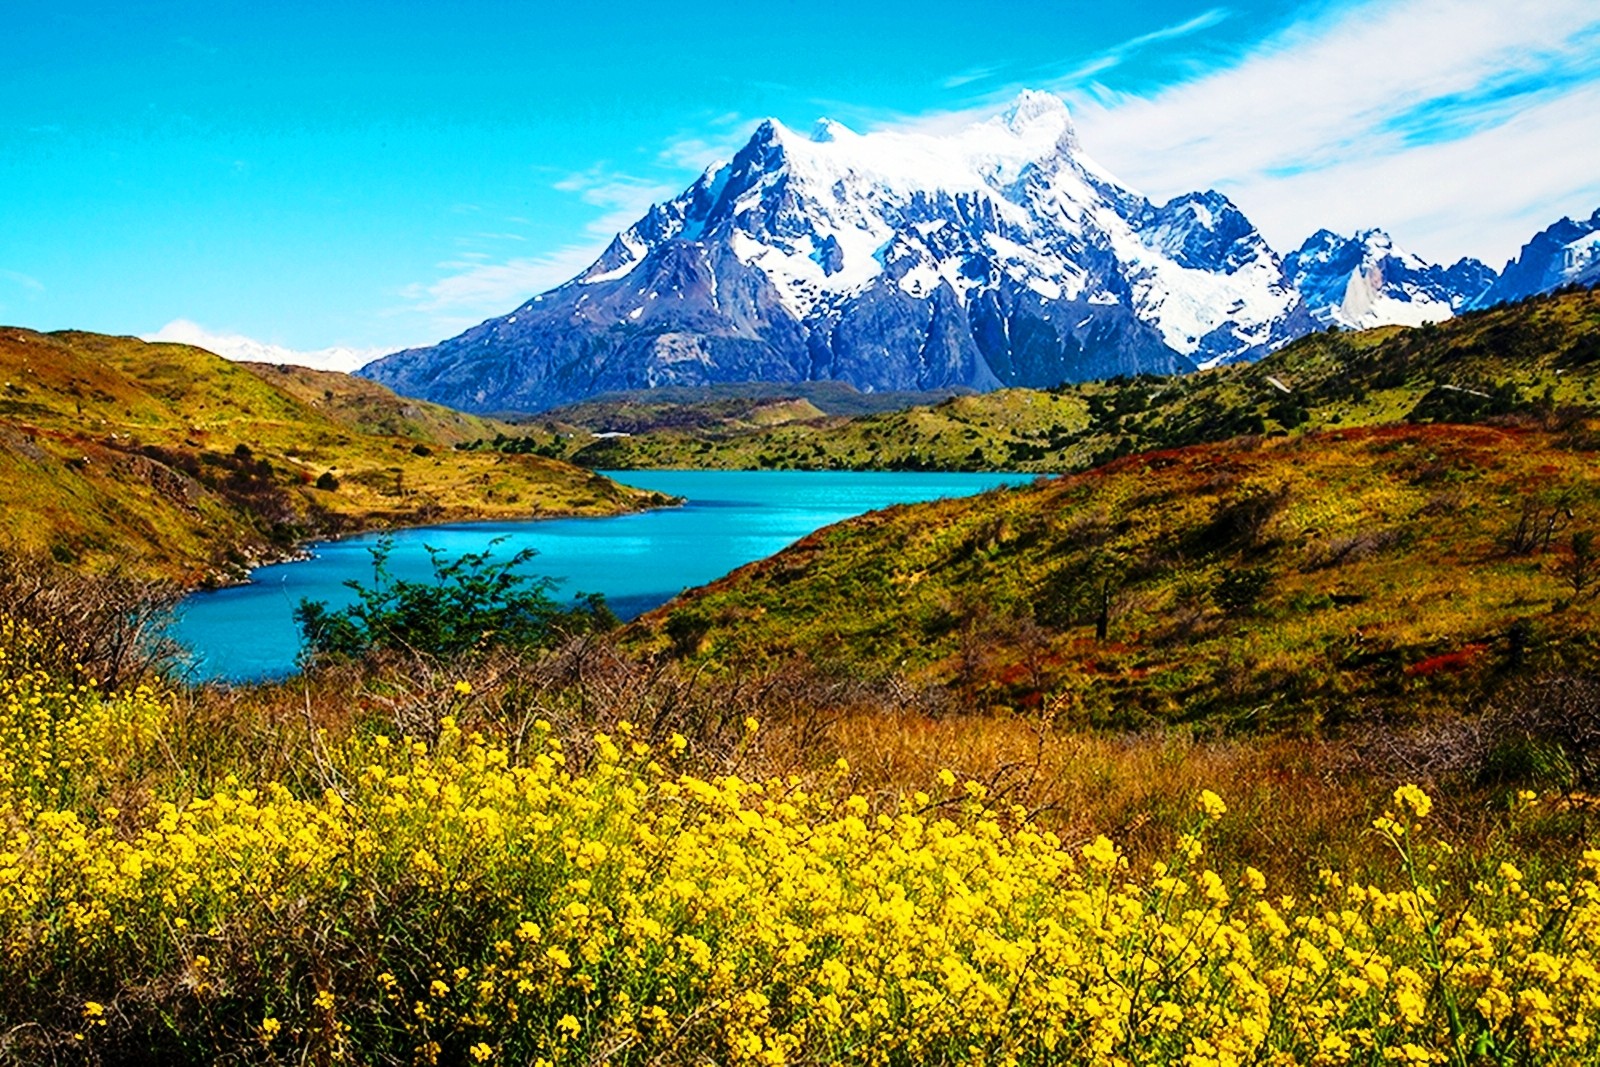 imágenes naturales fondos de pantalla descarga gratuita,paisaje natural,naturaleza,montaña,flor silvestre